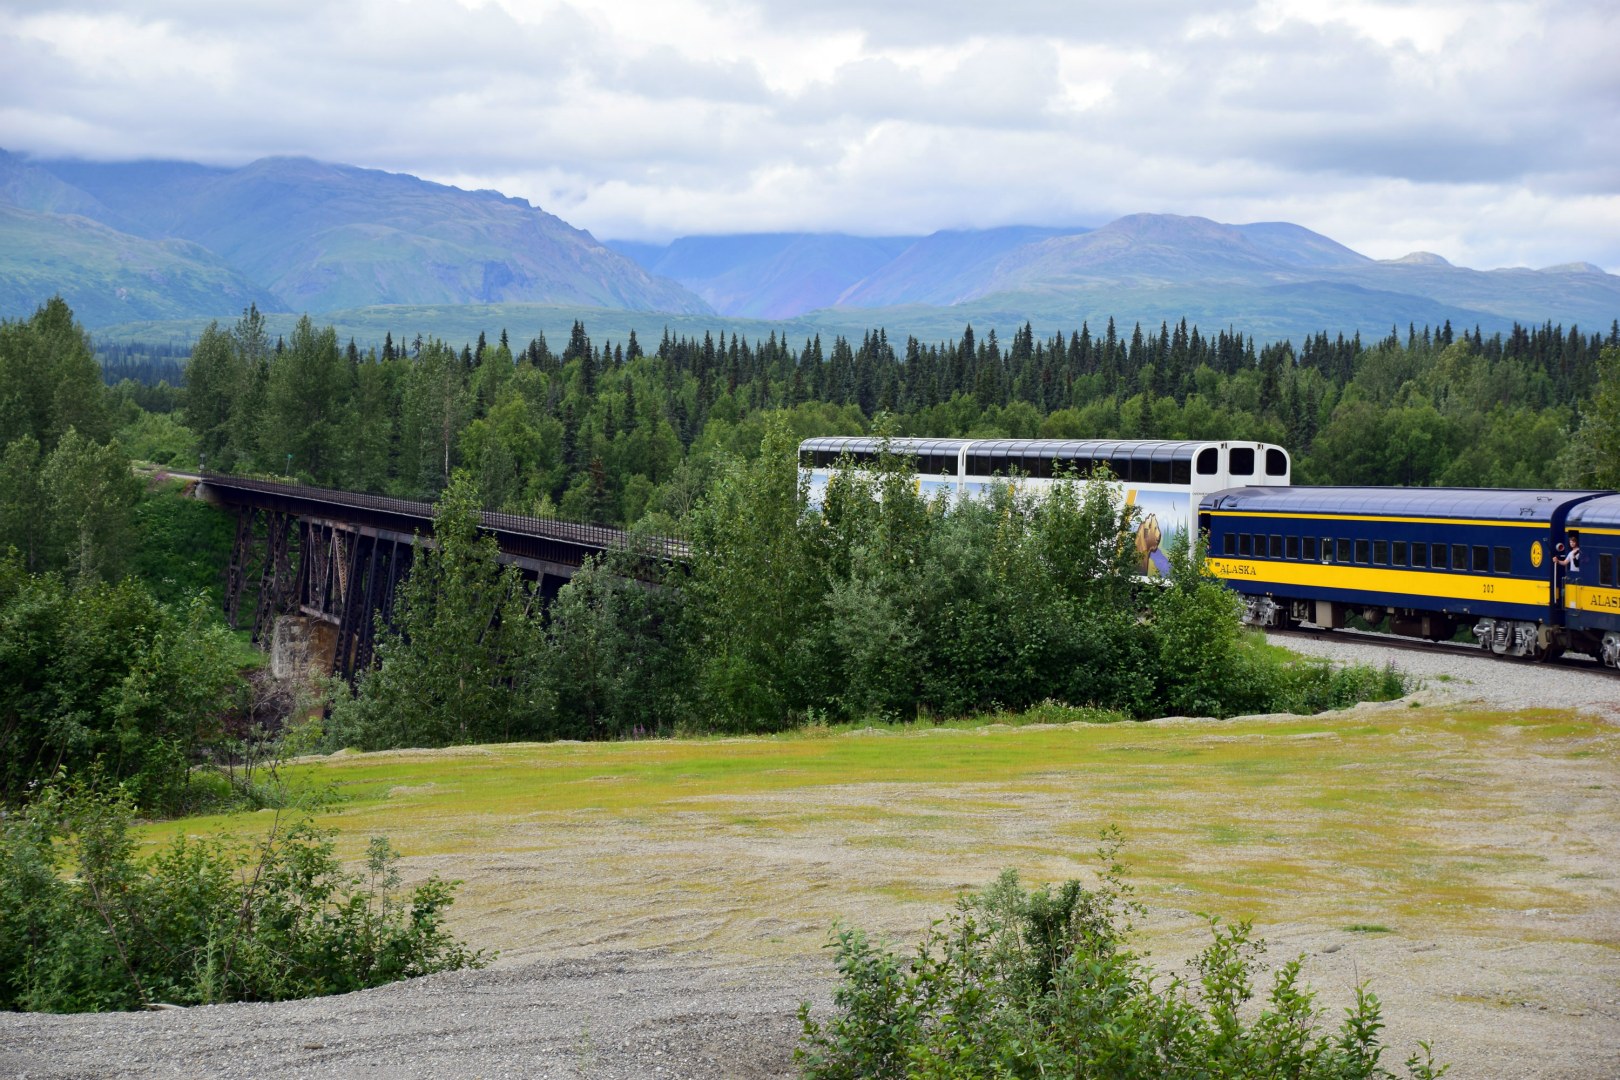 View from Alaska Railroad